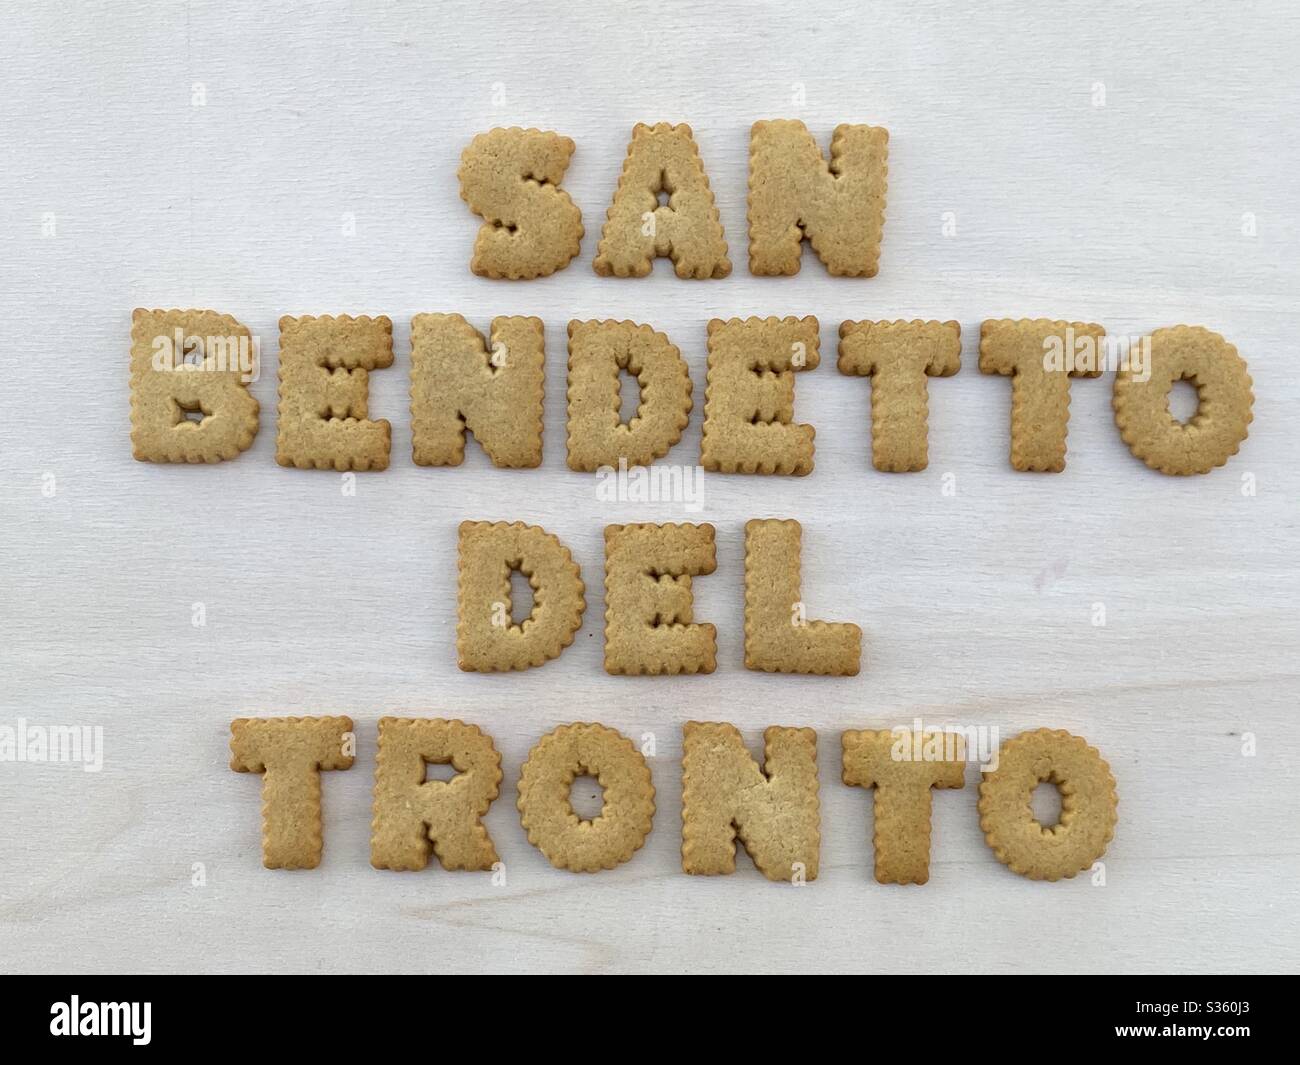 San Benedetto del Tronto, touristische Stadt vor der Adria, Italien, Souvenir mit hausgemachten Keksbuchstaben auf einem Holzbrett Stockfoto